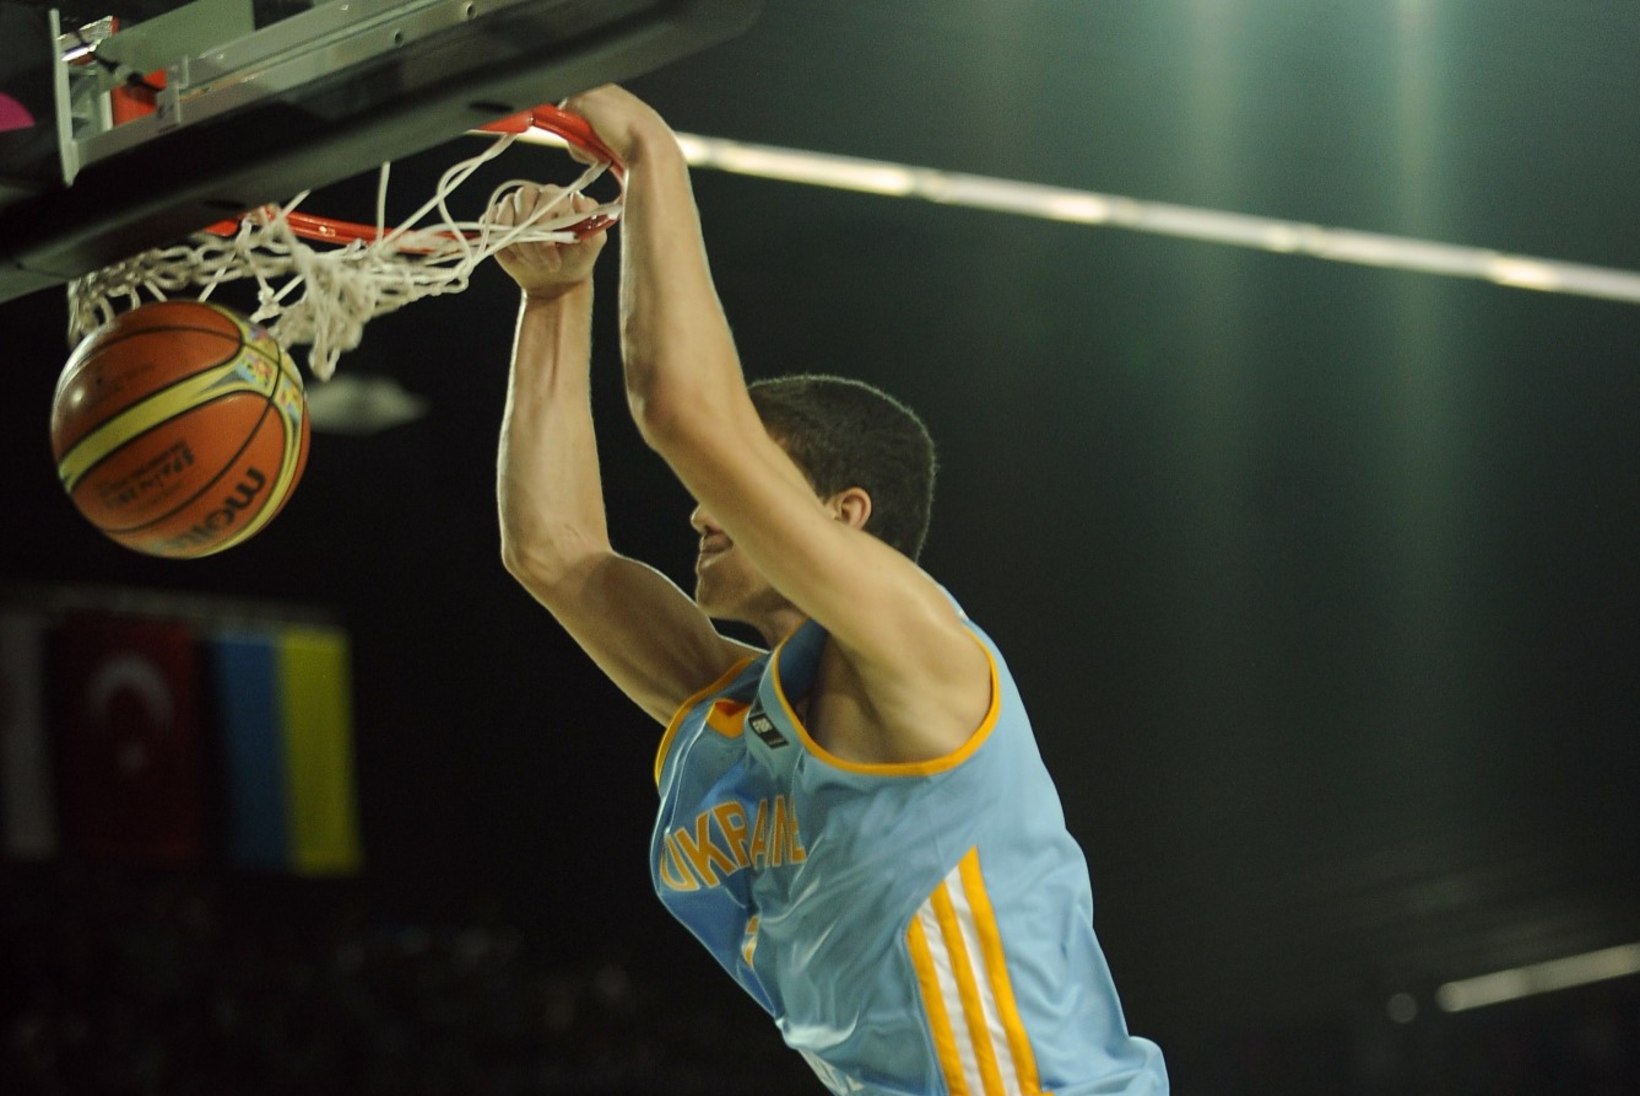 19aastane Ukraina korvpalli tulevikulootus saatis NBA vähemalt praegu pikalt